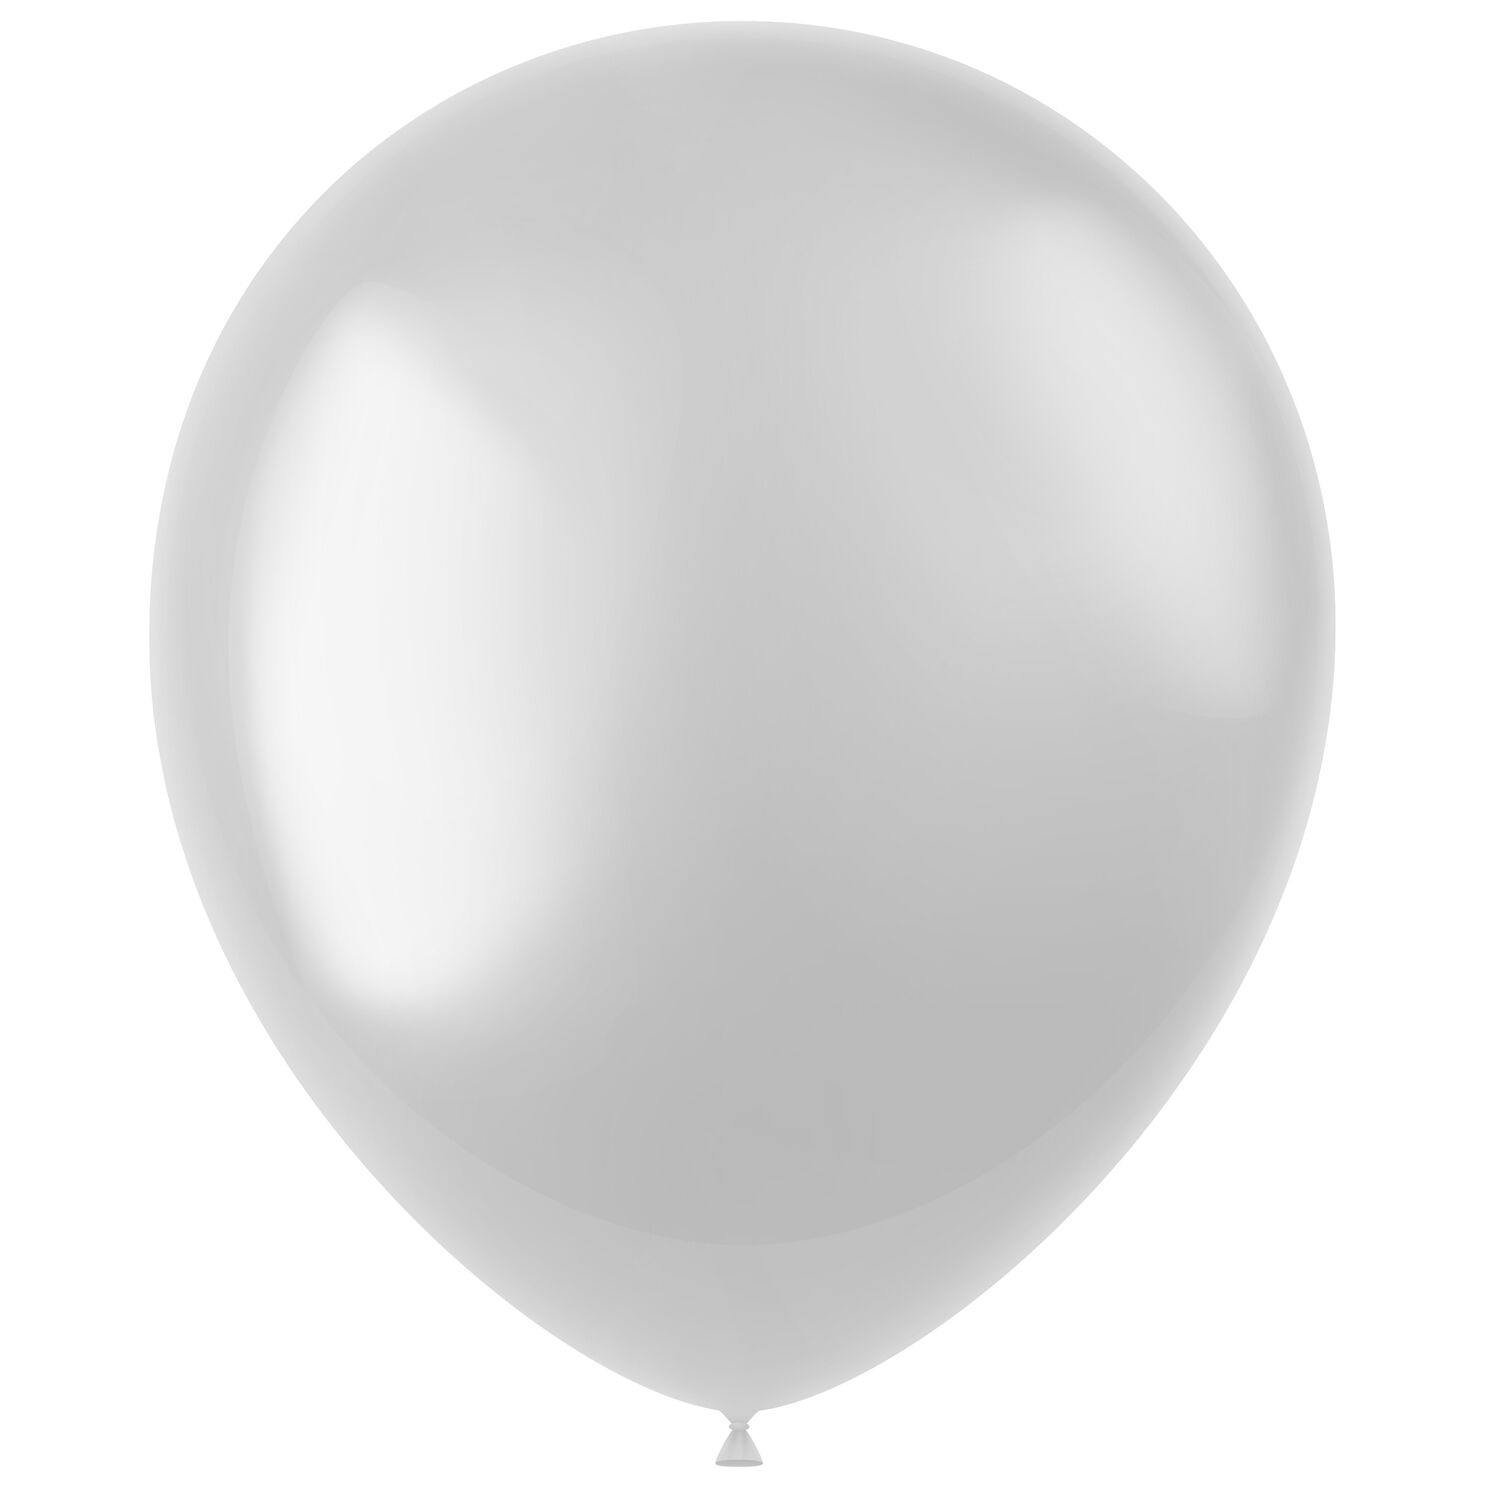 NEU Latex-Luftballons glänzend, 33cm, weiß, 10 Stück, Metallic-Ballons